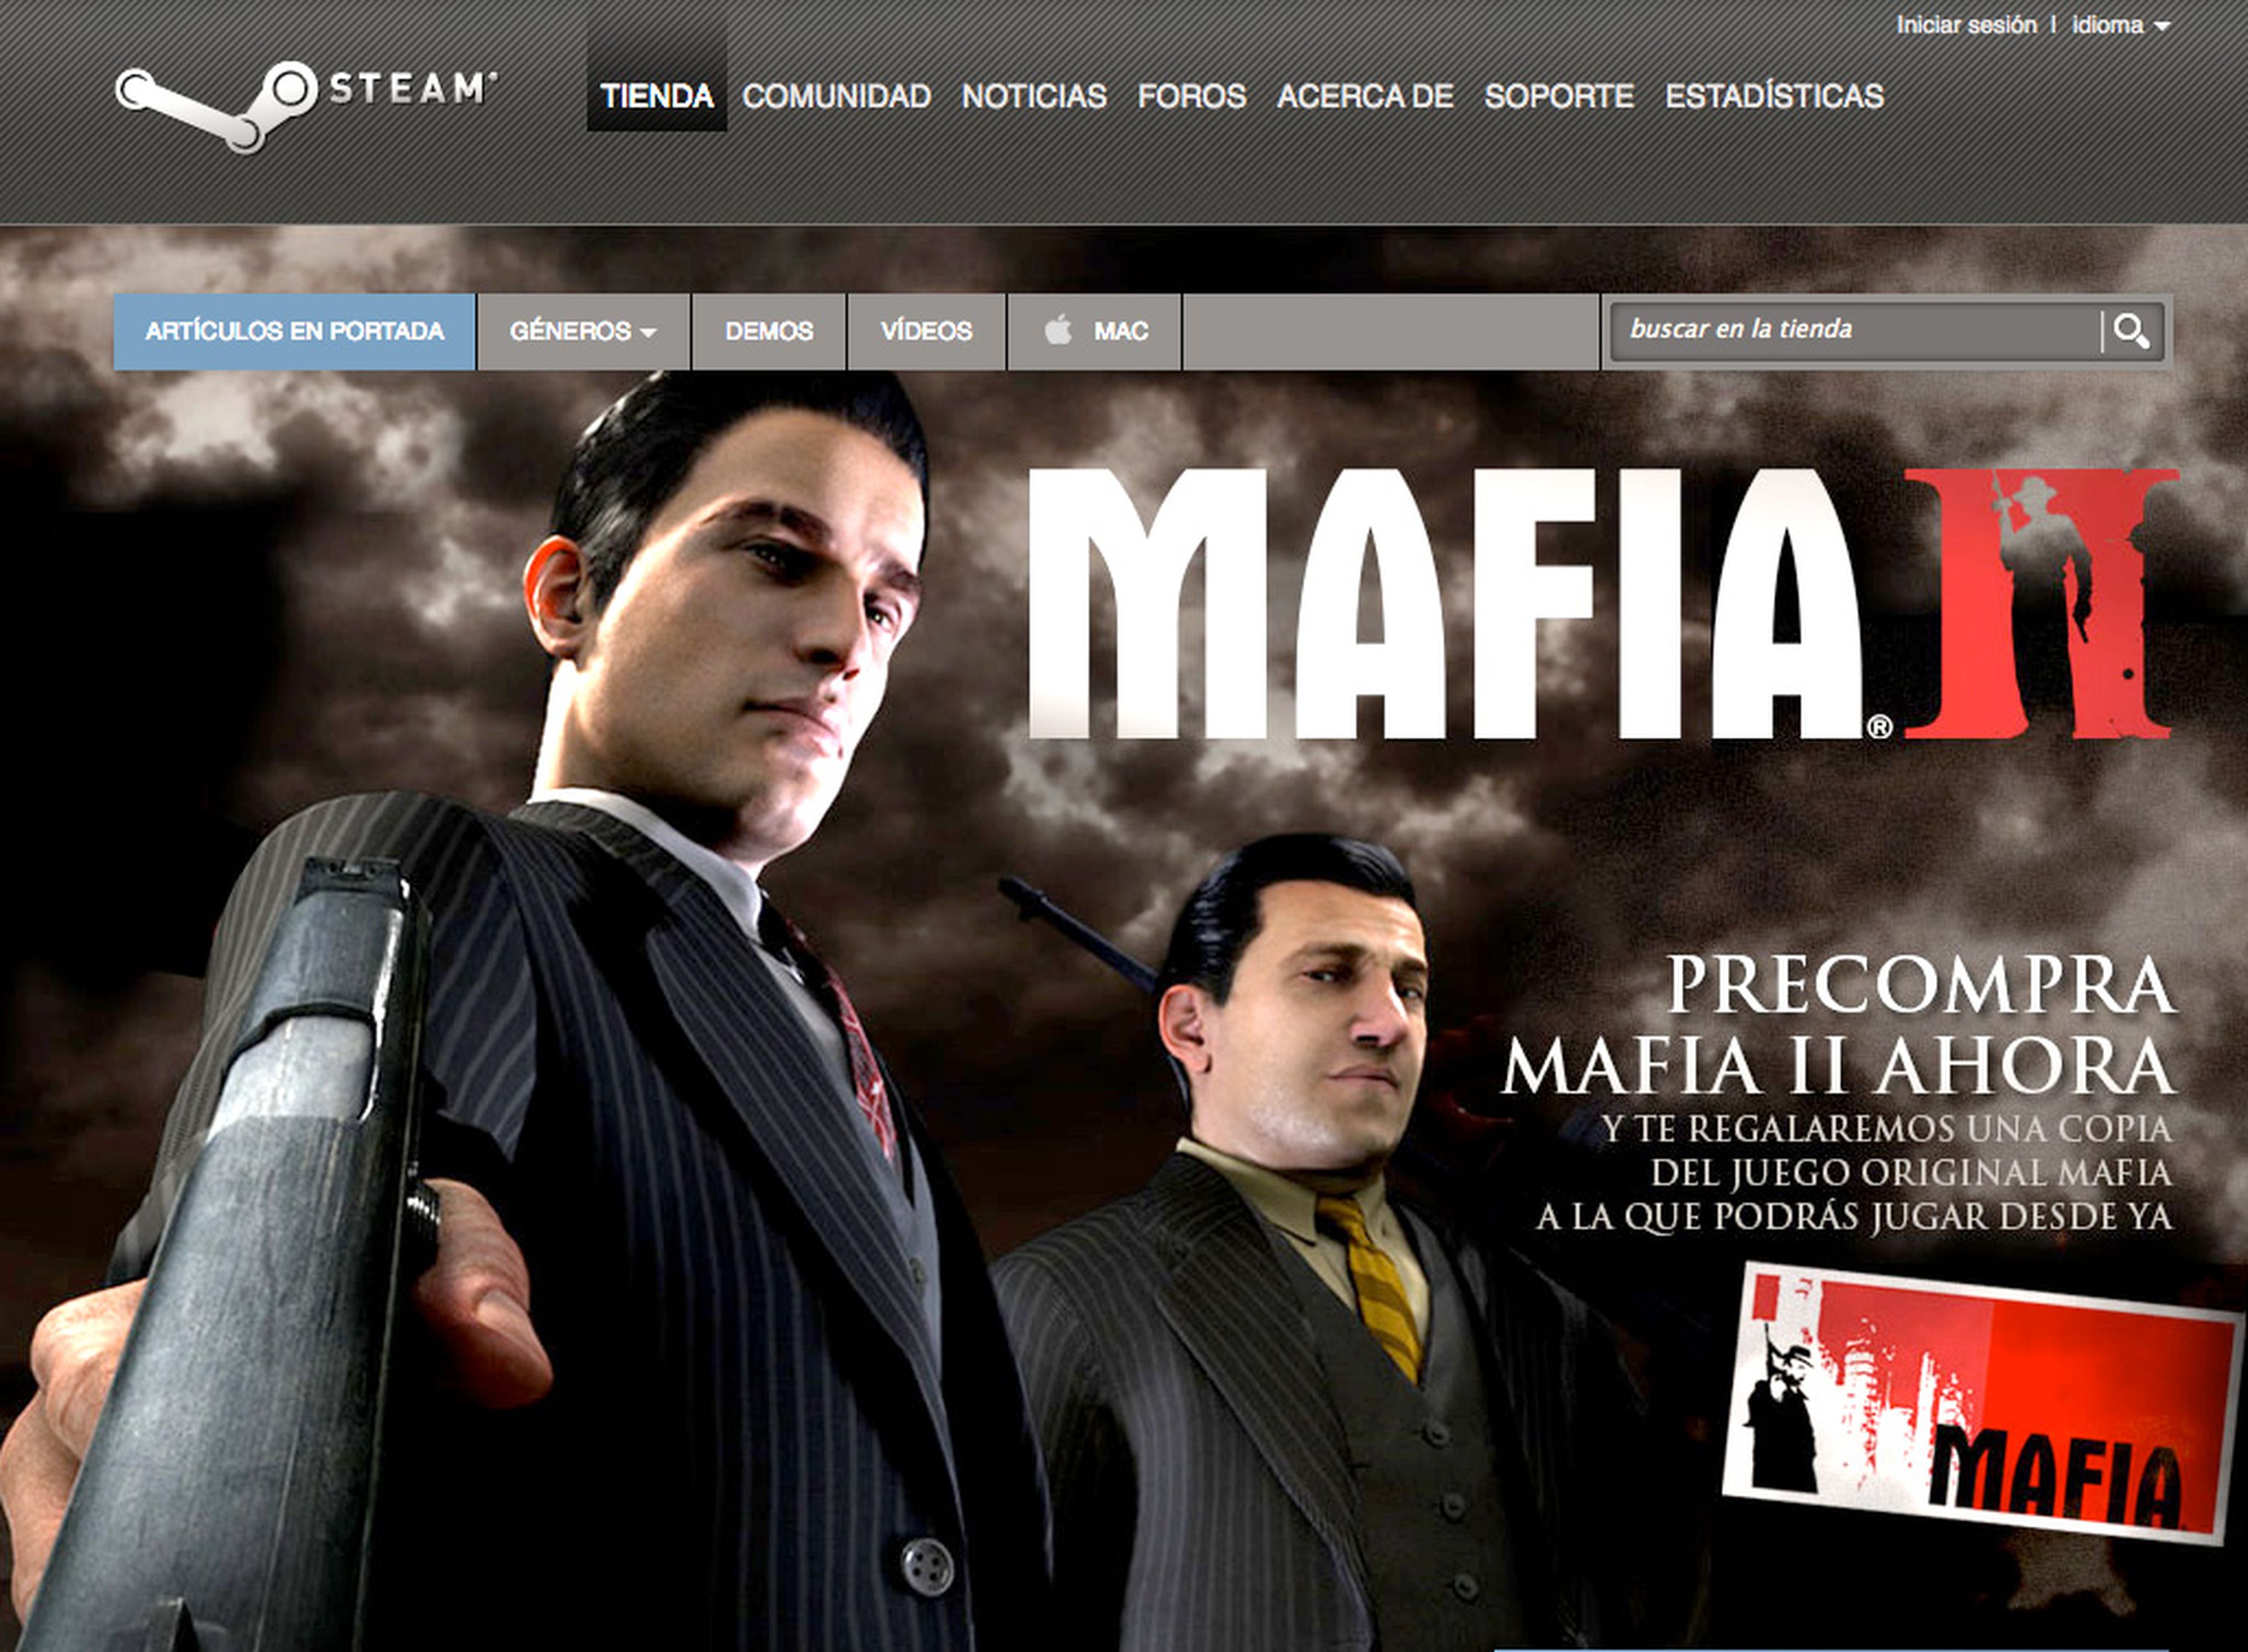 Mafia II, disponible para reservar